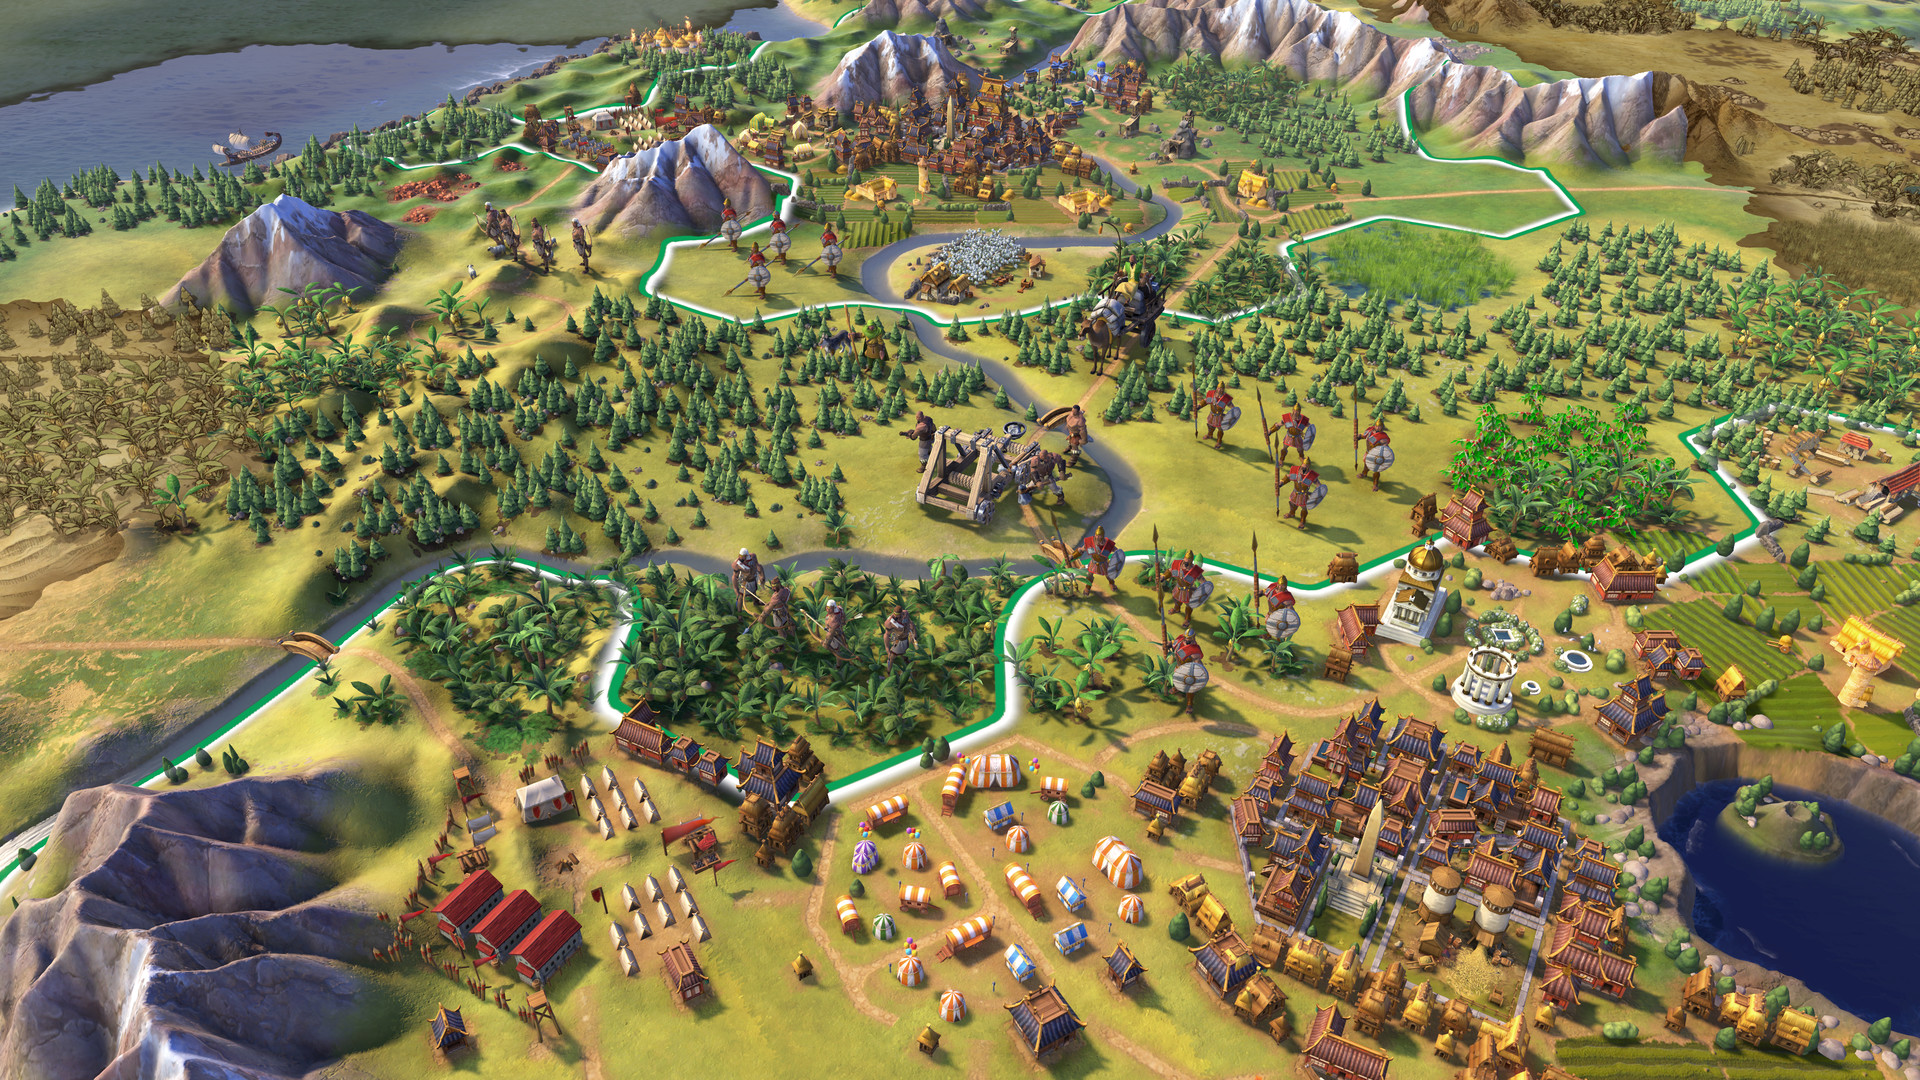 משחקי אסטרטגיה ניידים הטובים ביותר: Civilization VI. התמונה מציגה יישוב המוקם בגבעות מרושלות